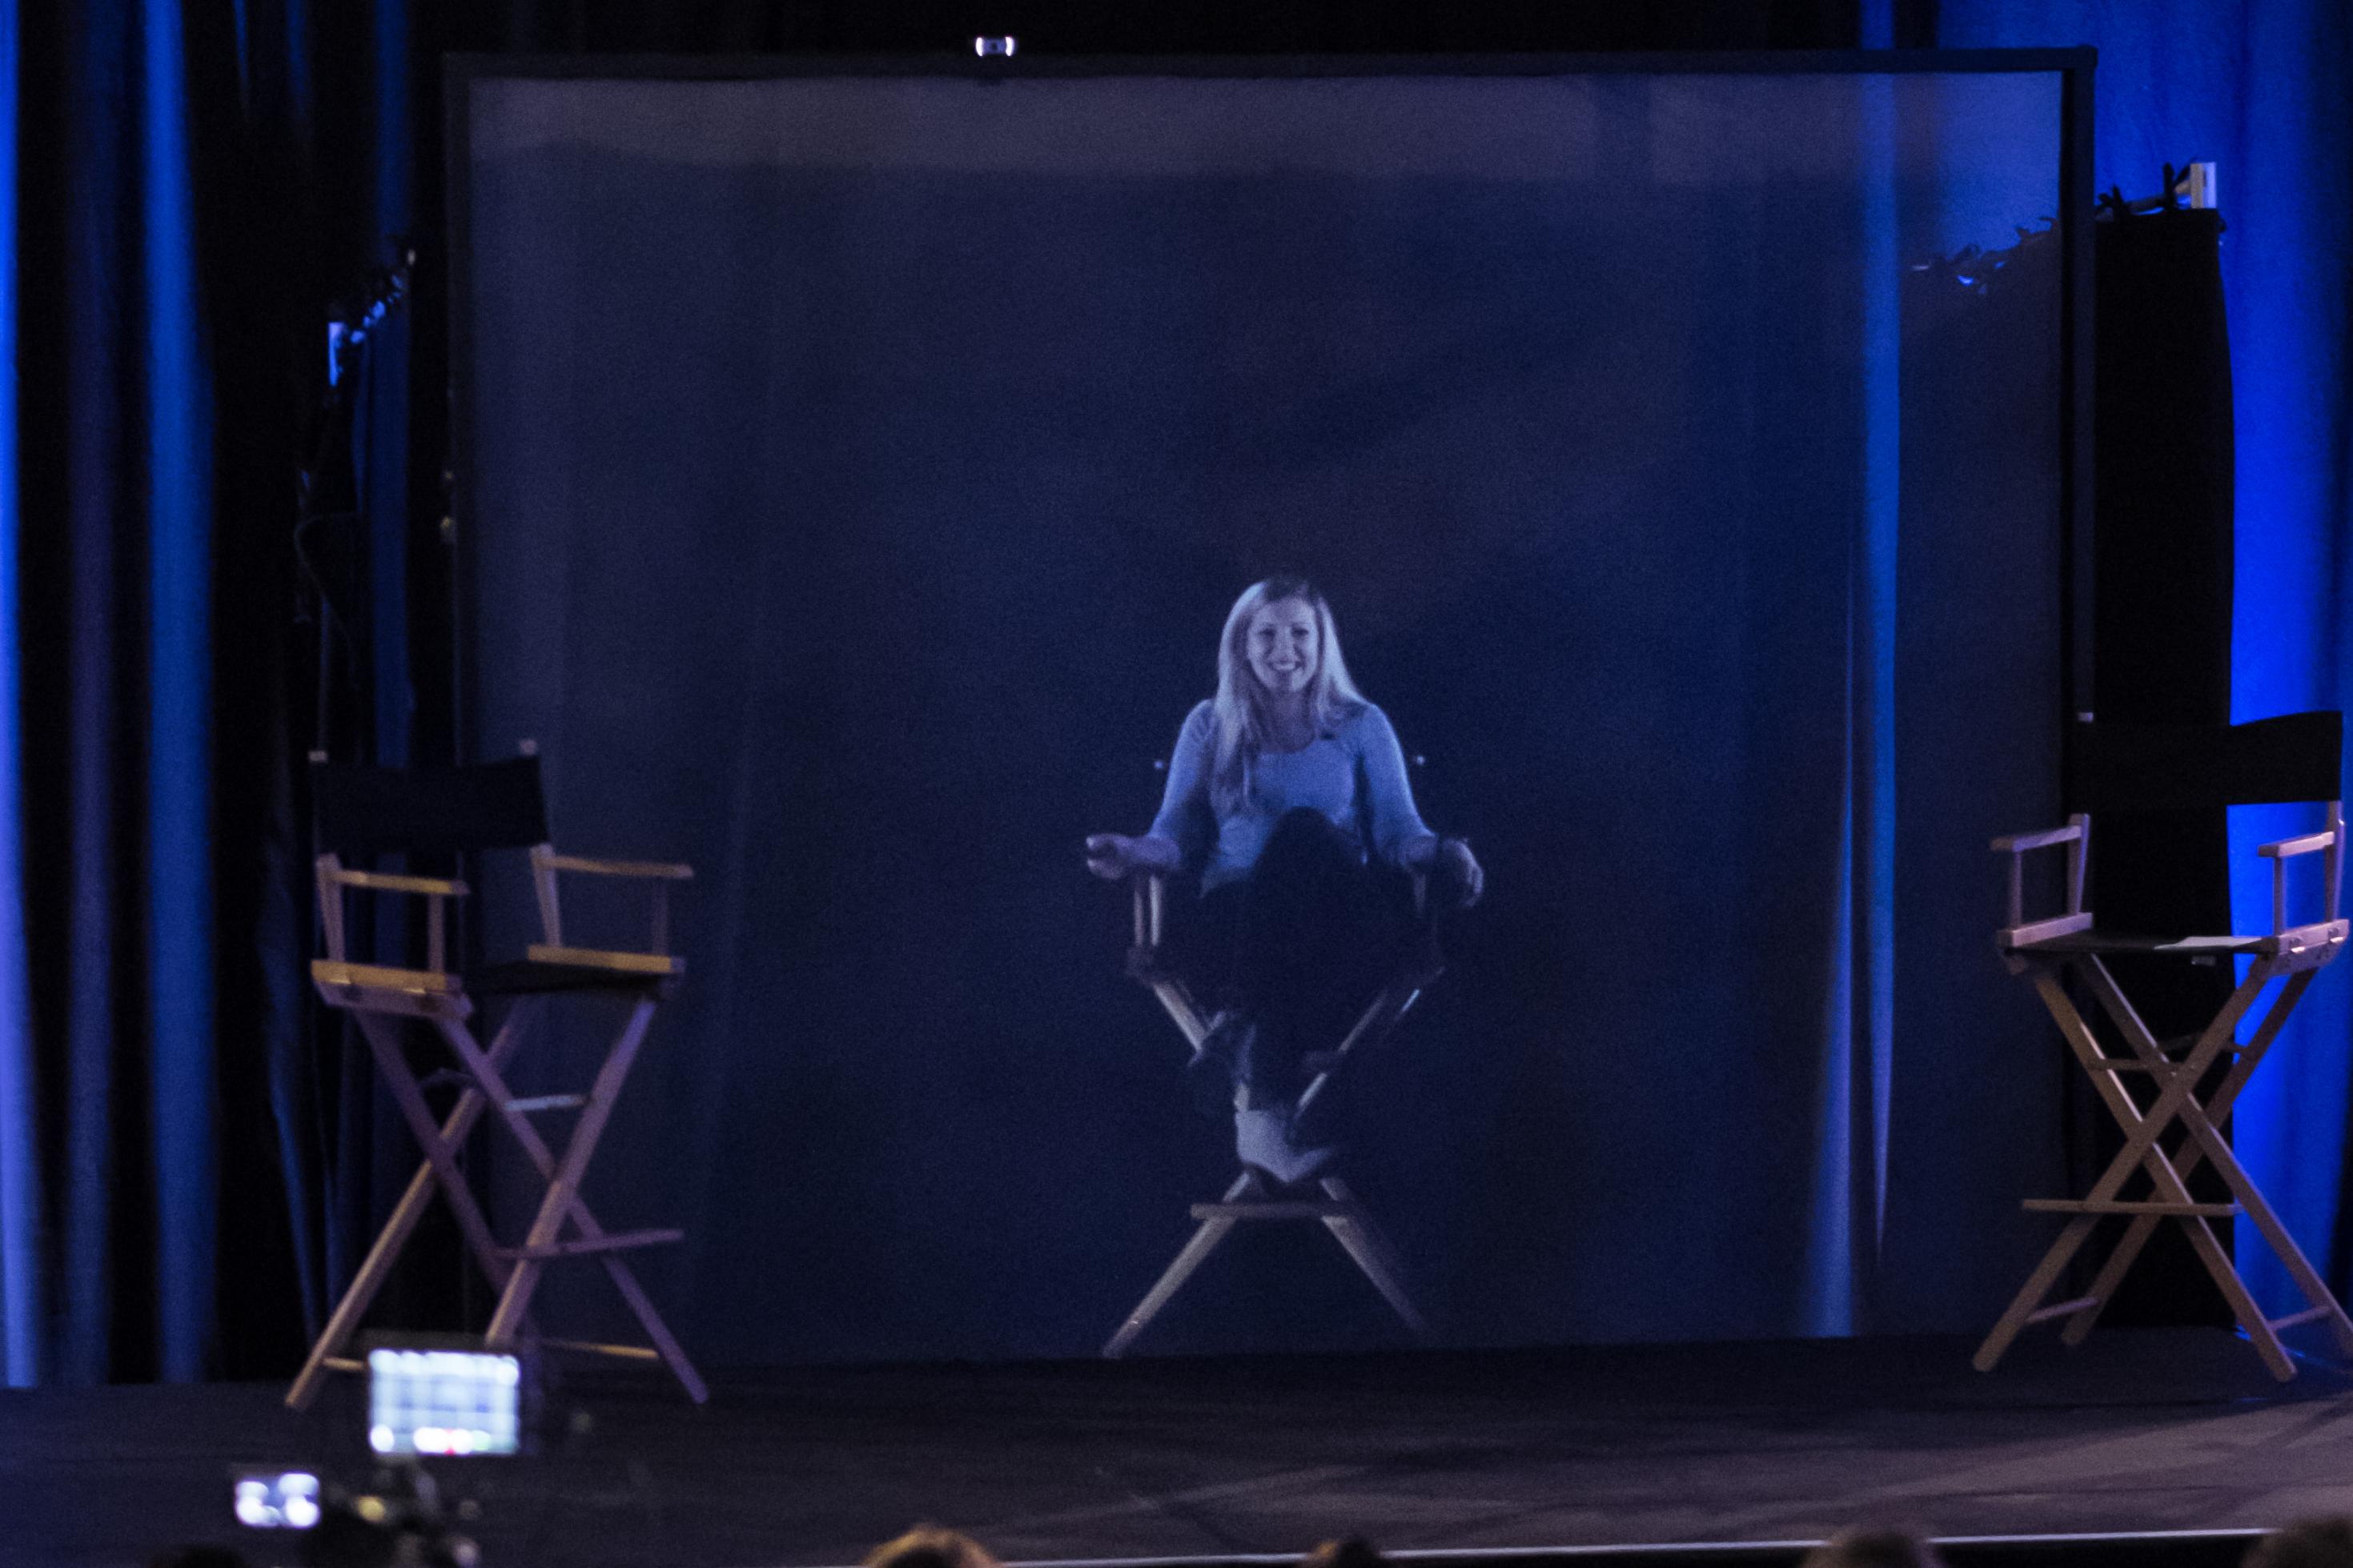 Auf einem Podium sitzt eine Frau auf einem hohen Stuhl. Scheinbar. Denn tatsächlich ist sie nicht in Person anwesend, sondern wurden nur als Hologramm zugeschaltet.